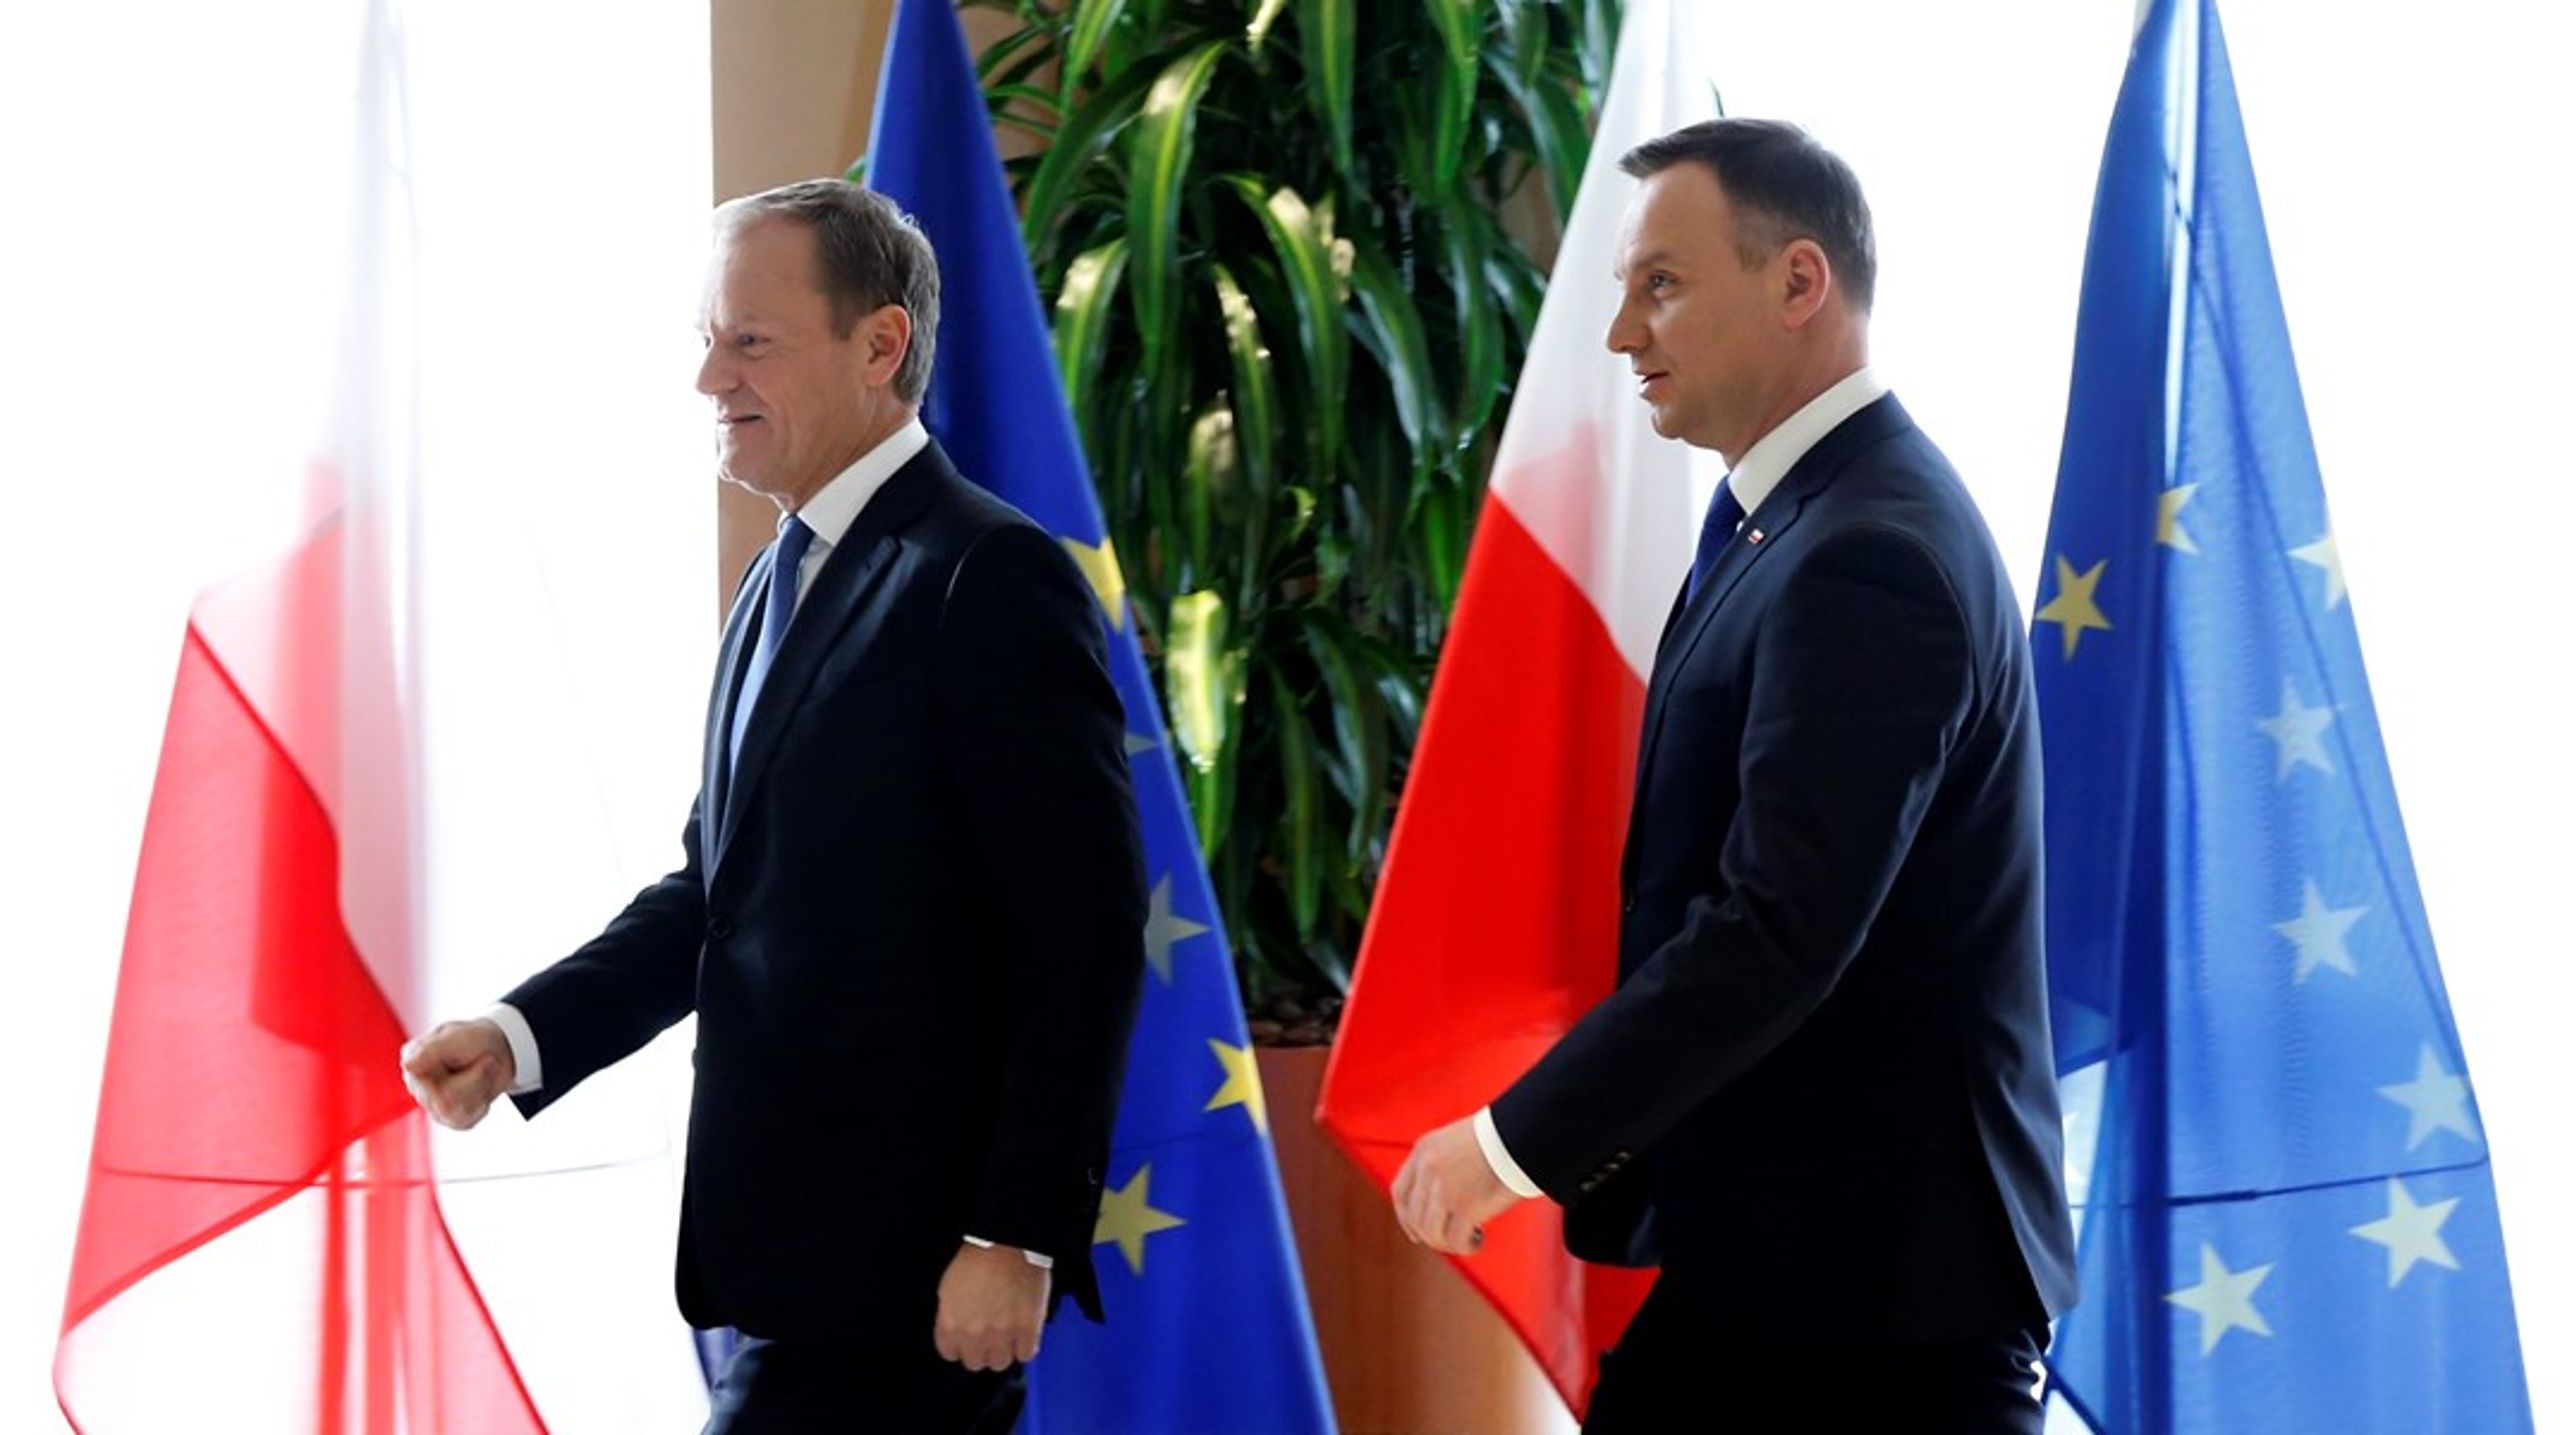 Det politiska landskapet i Polen präglas av maktkamper mellan landets nytillträdde premiärminister Donald Tusk (till vänster) och landets president Andrzej Duda (till höger).